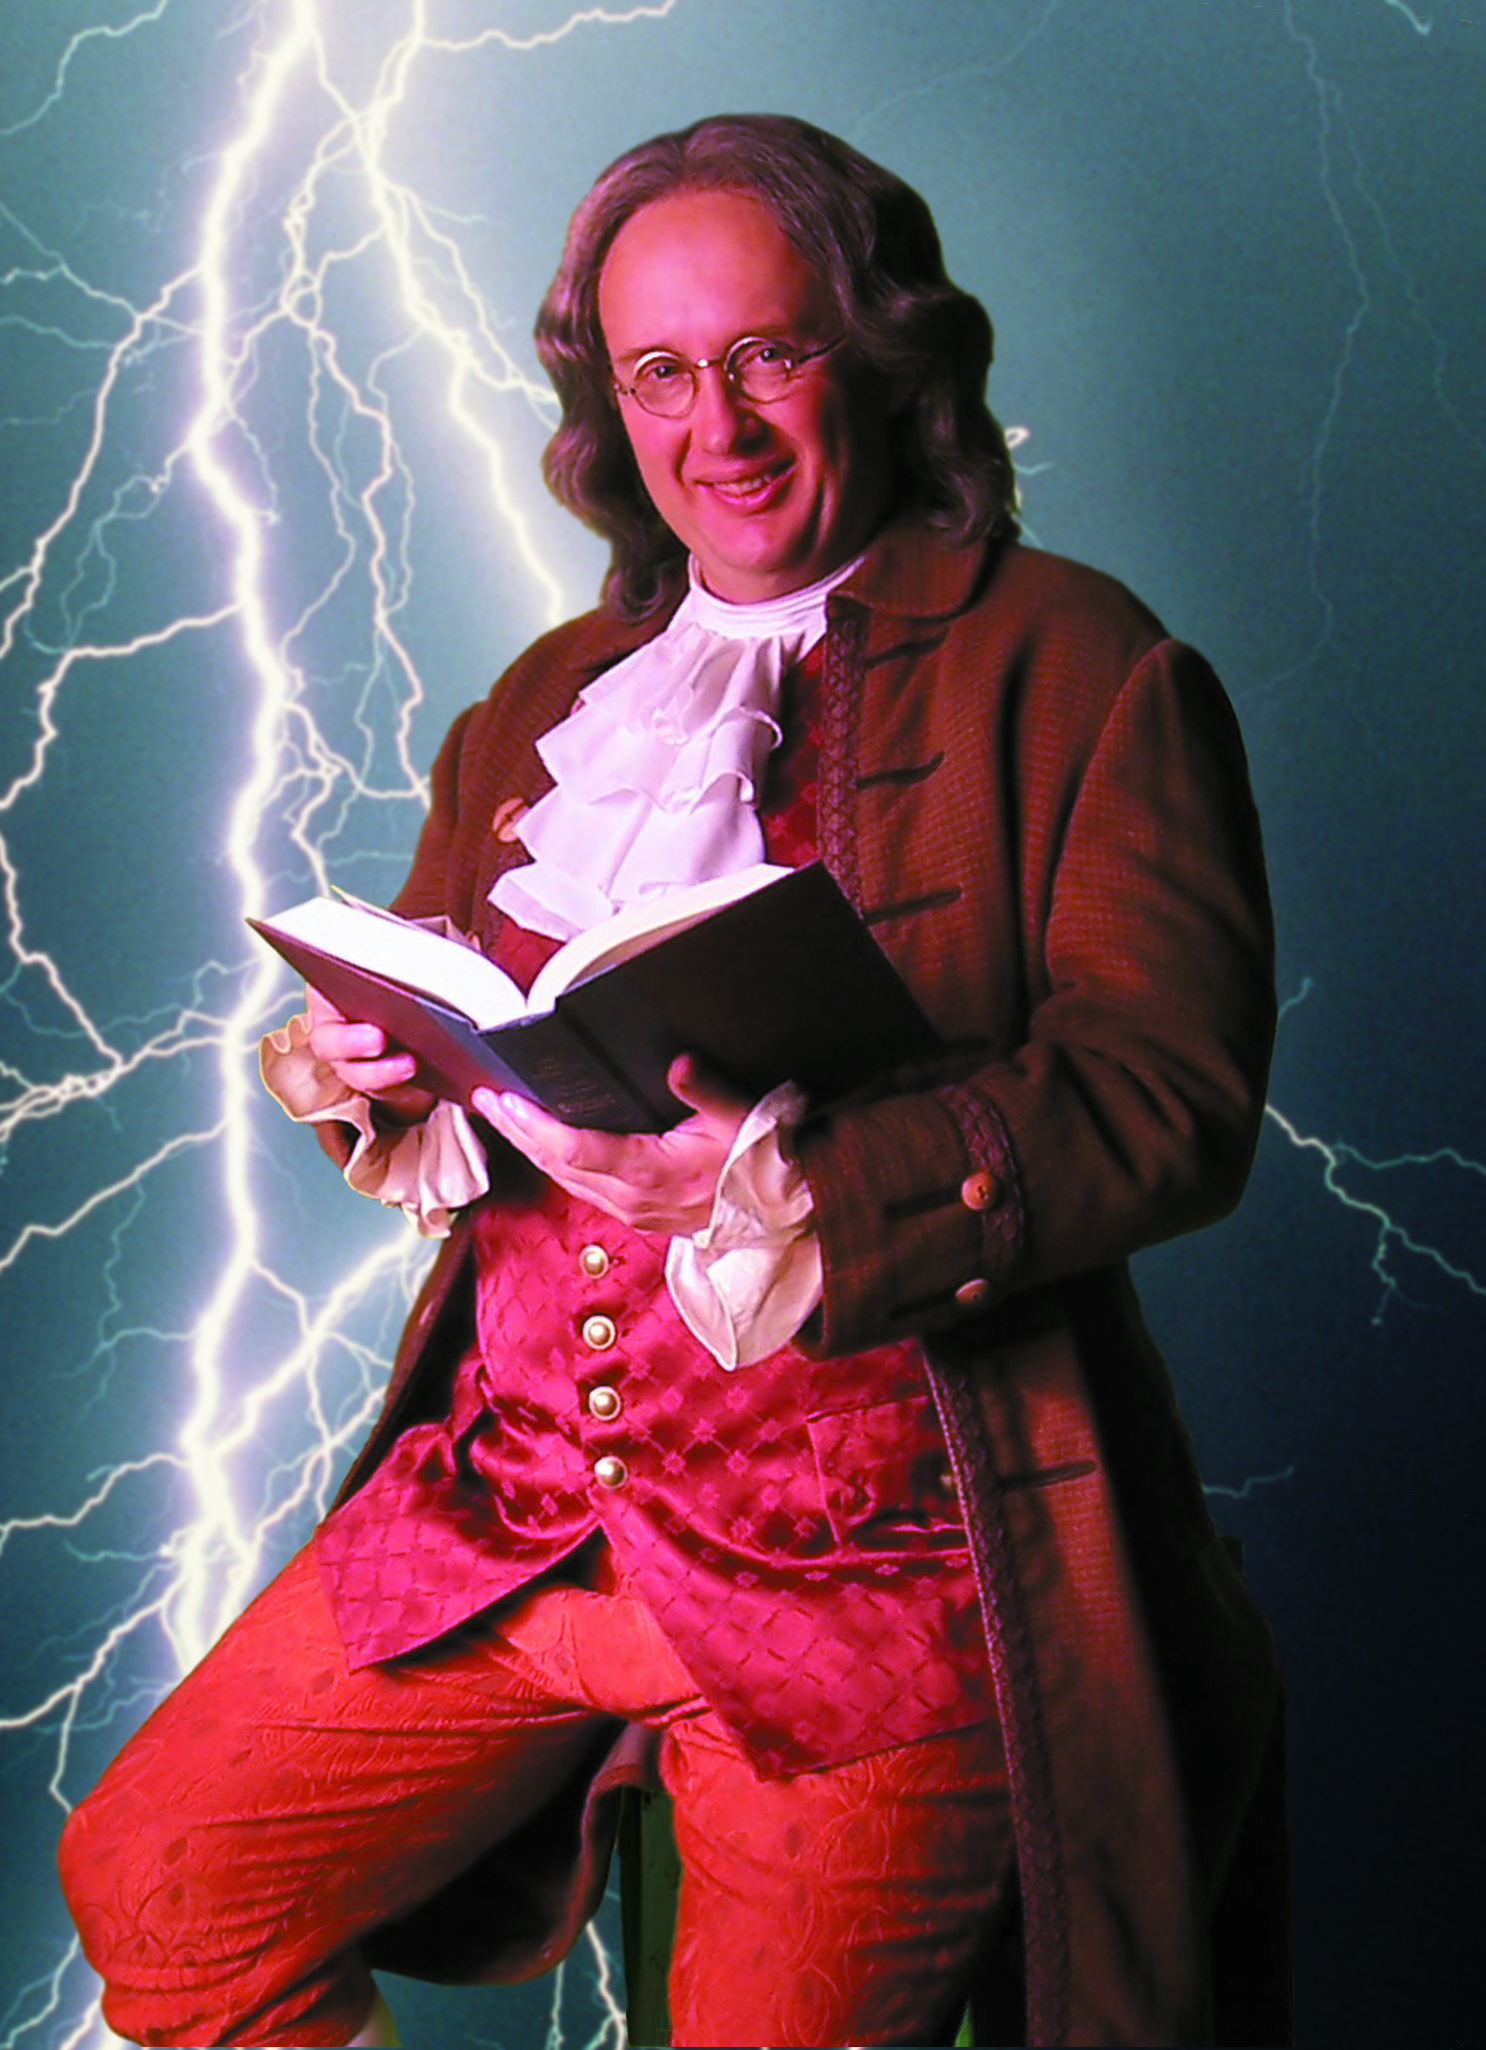 Joe Ochman as Ben Franklin in THE FRANKLIN SPIRIT